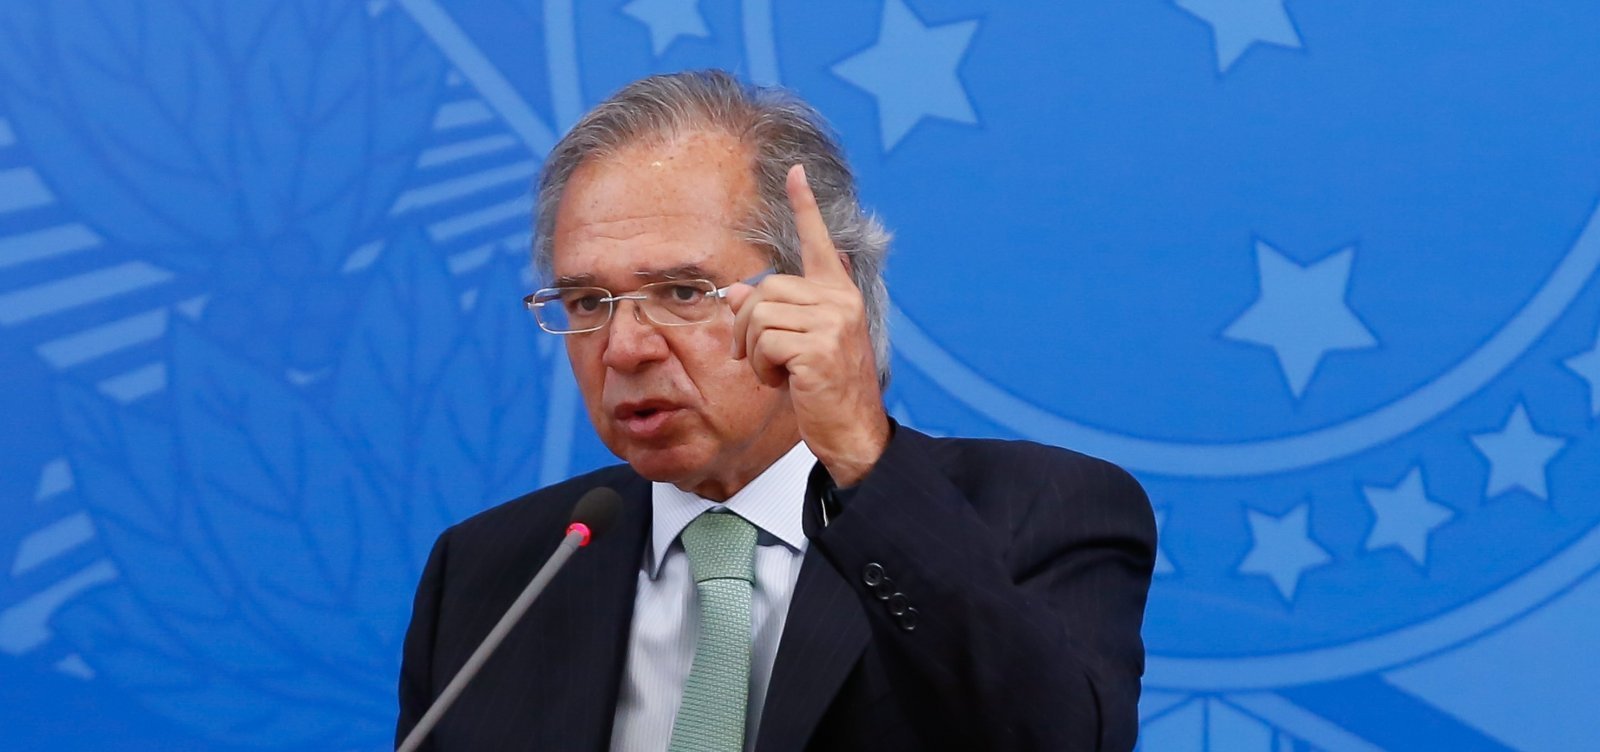 Será um grande erro não investir no Brasil', diz Paulo Guedes - Metro 1